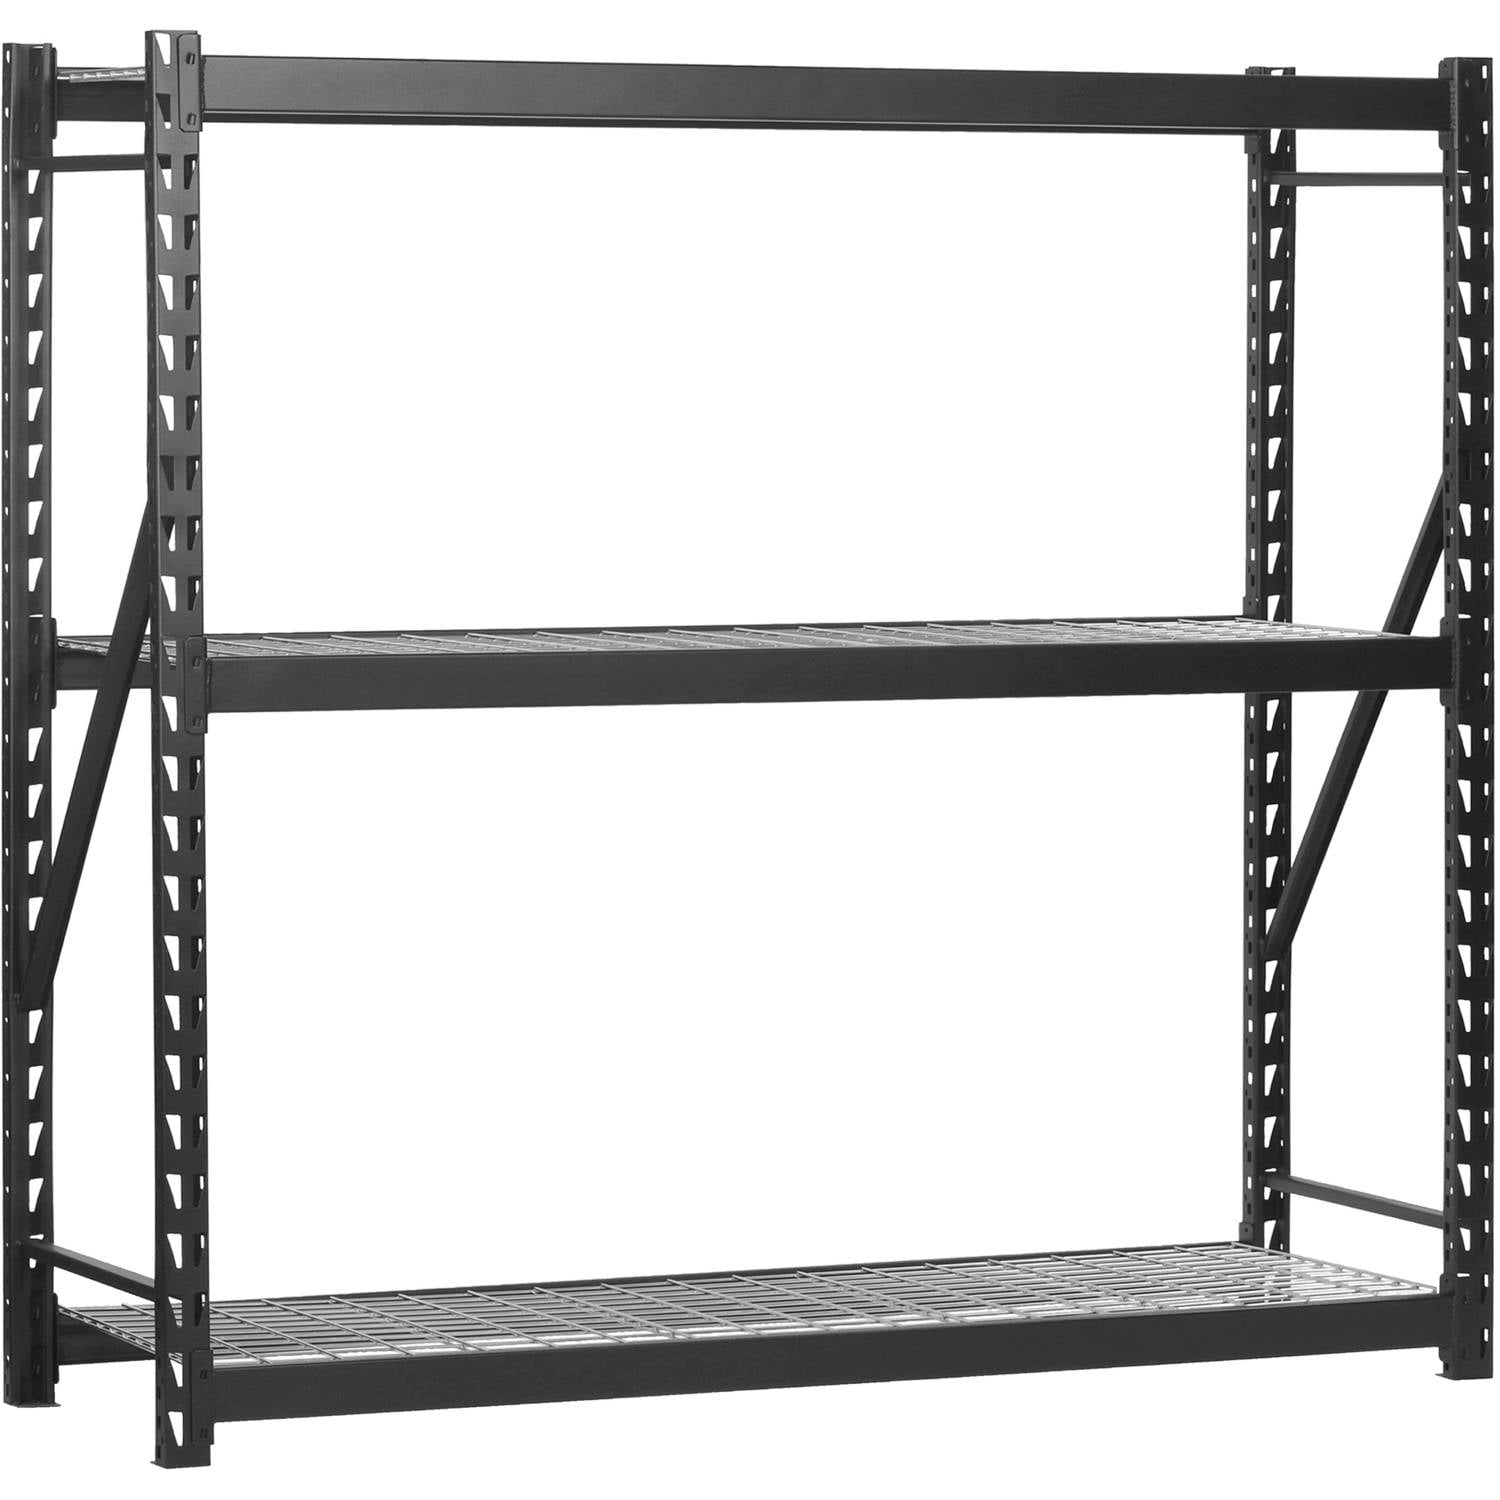 Black 4000 lb Heavy Duty Storage Rack 48"W x 24"D x 72"H 5-Shelf Steel Shelving 